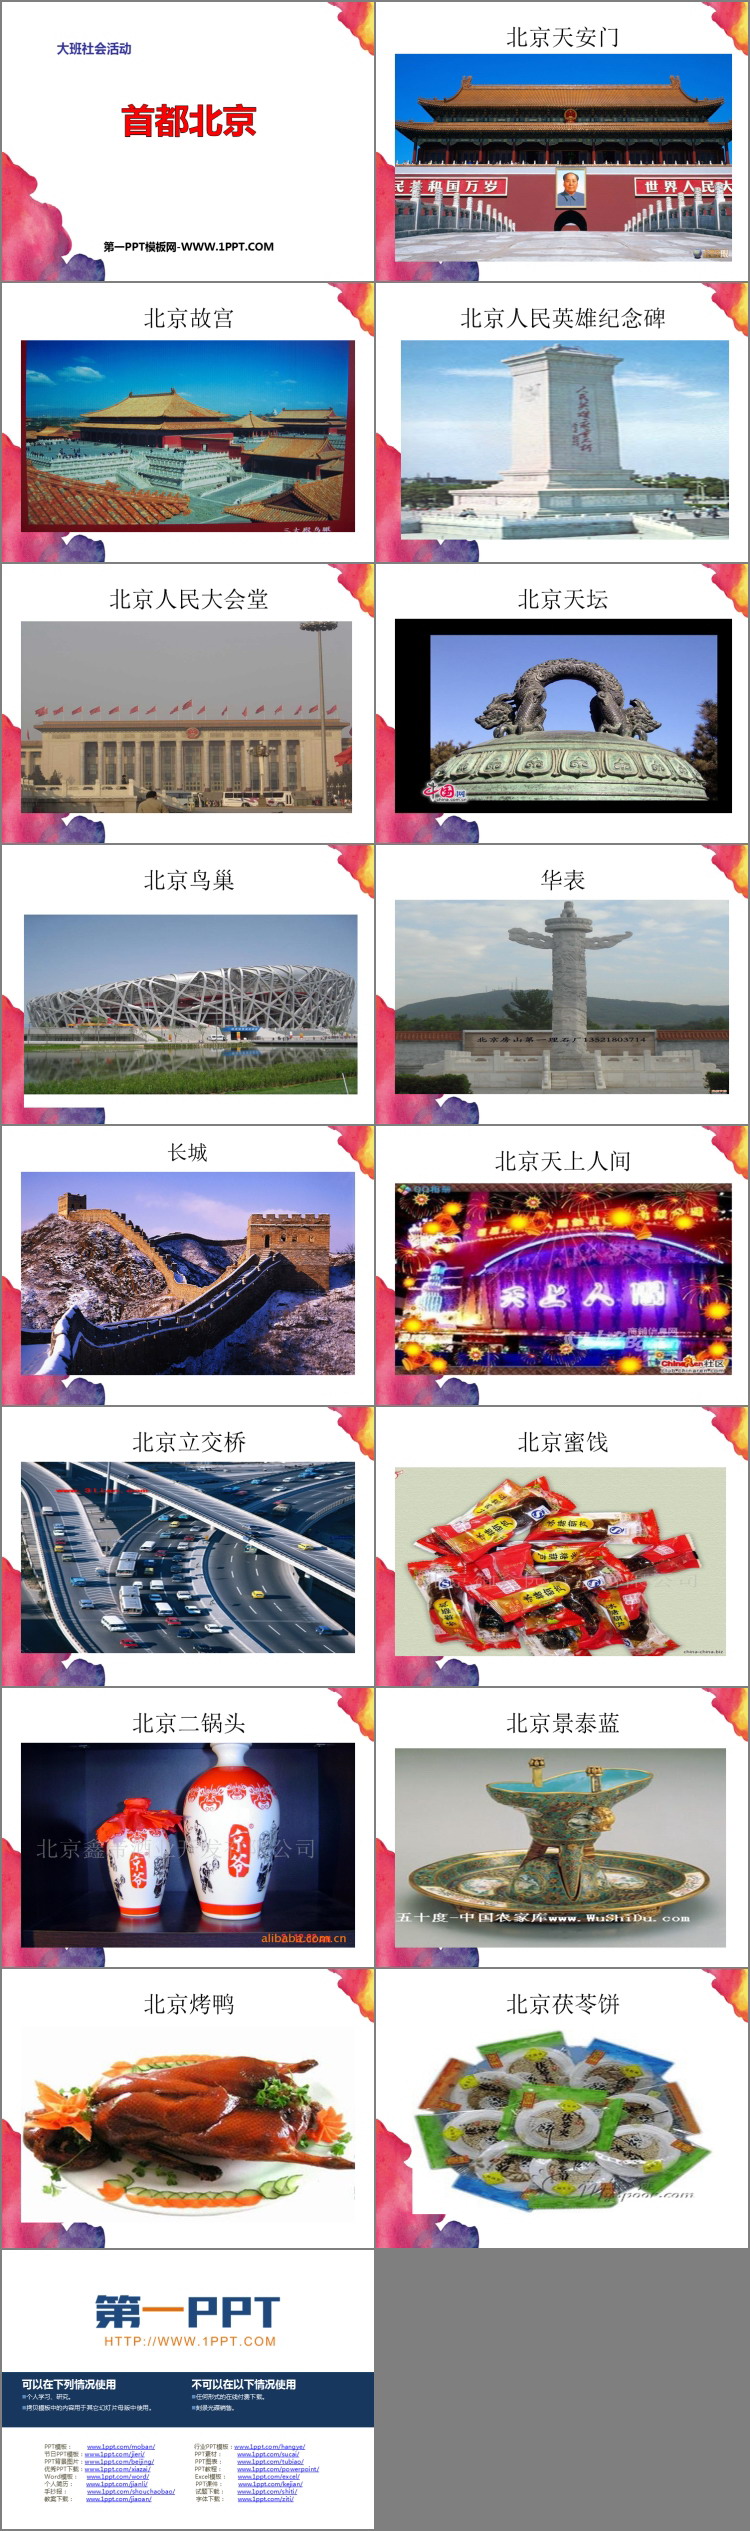 《首都北京》PPT免费课件下载-预览图02